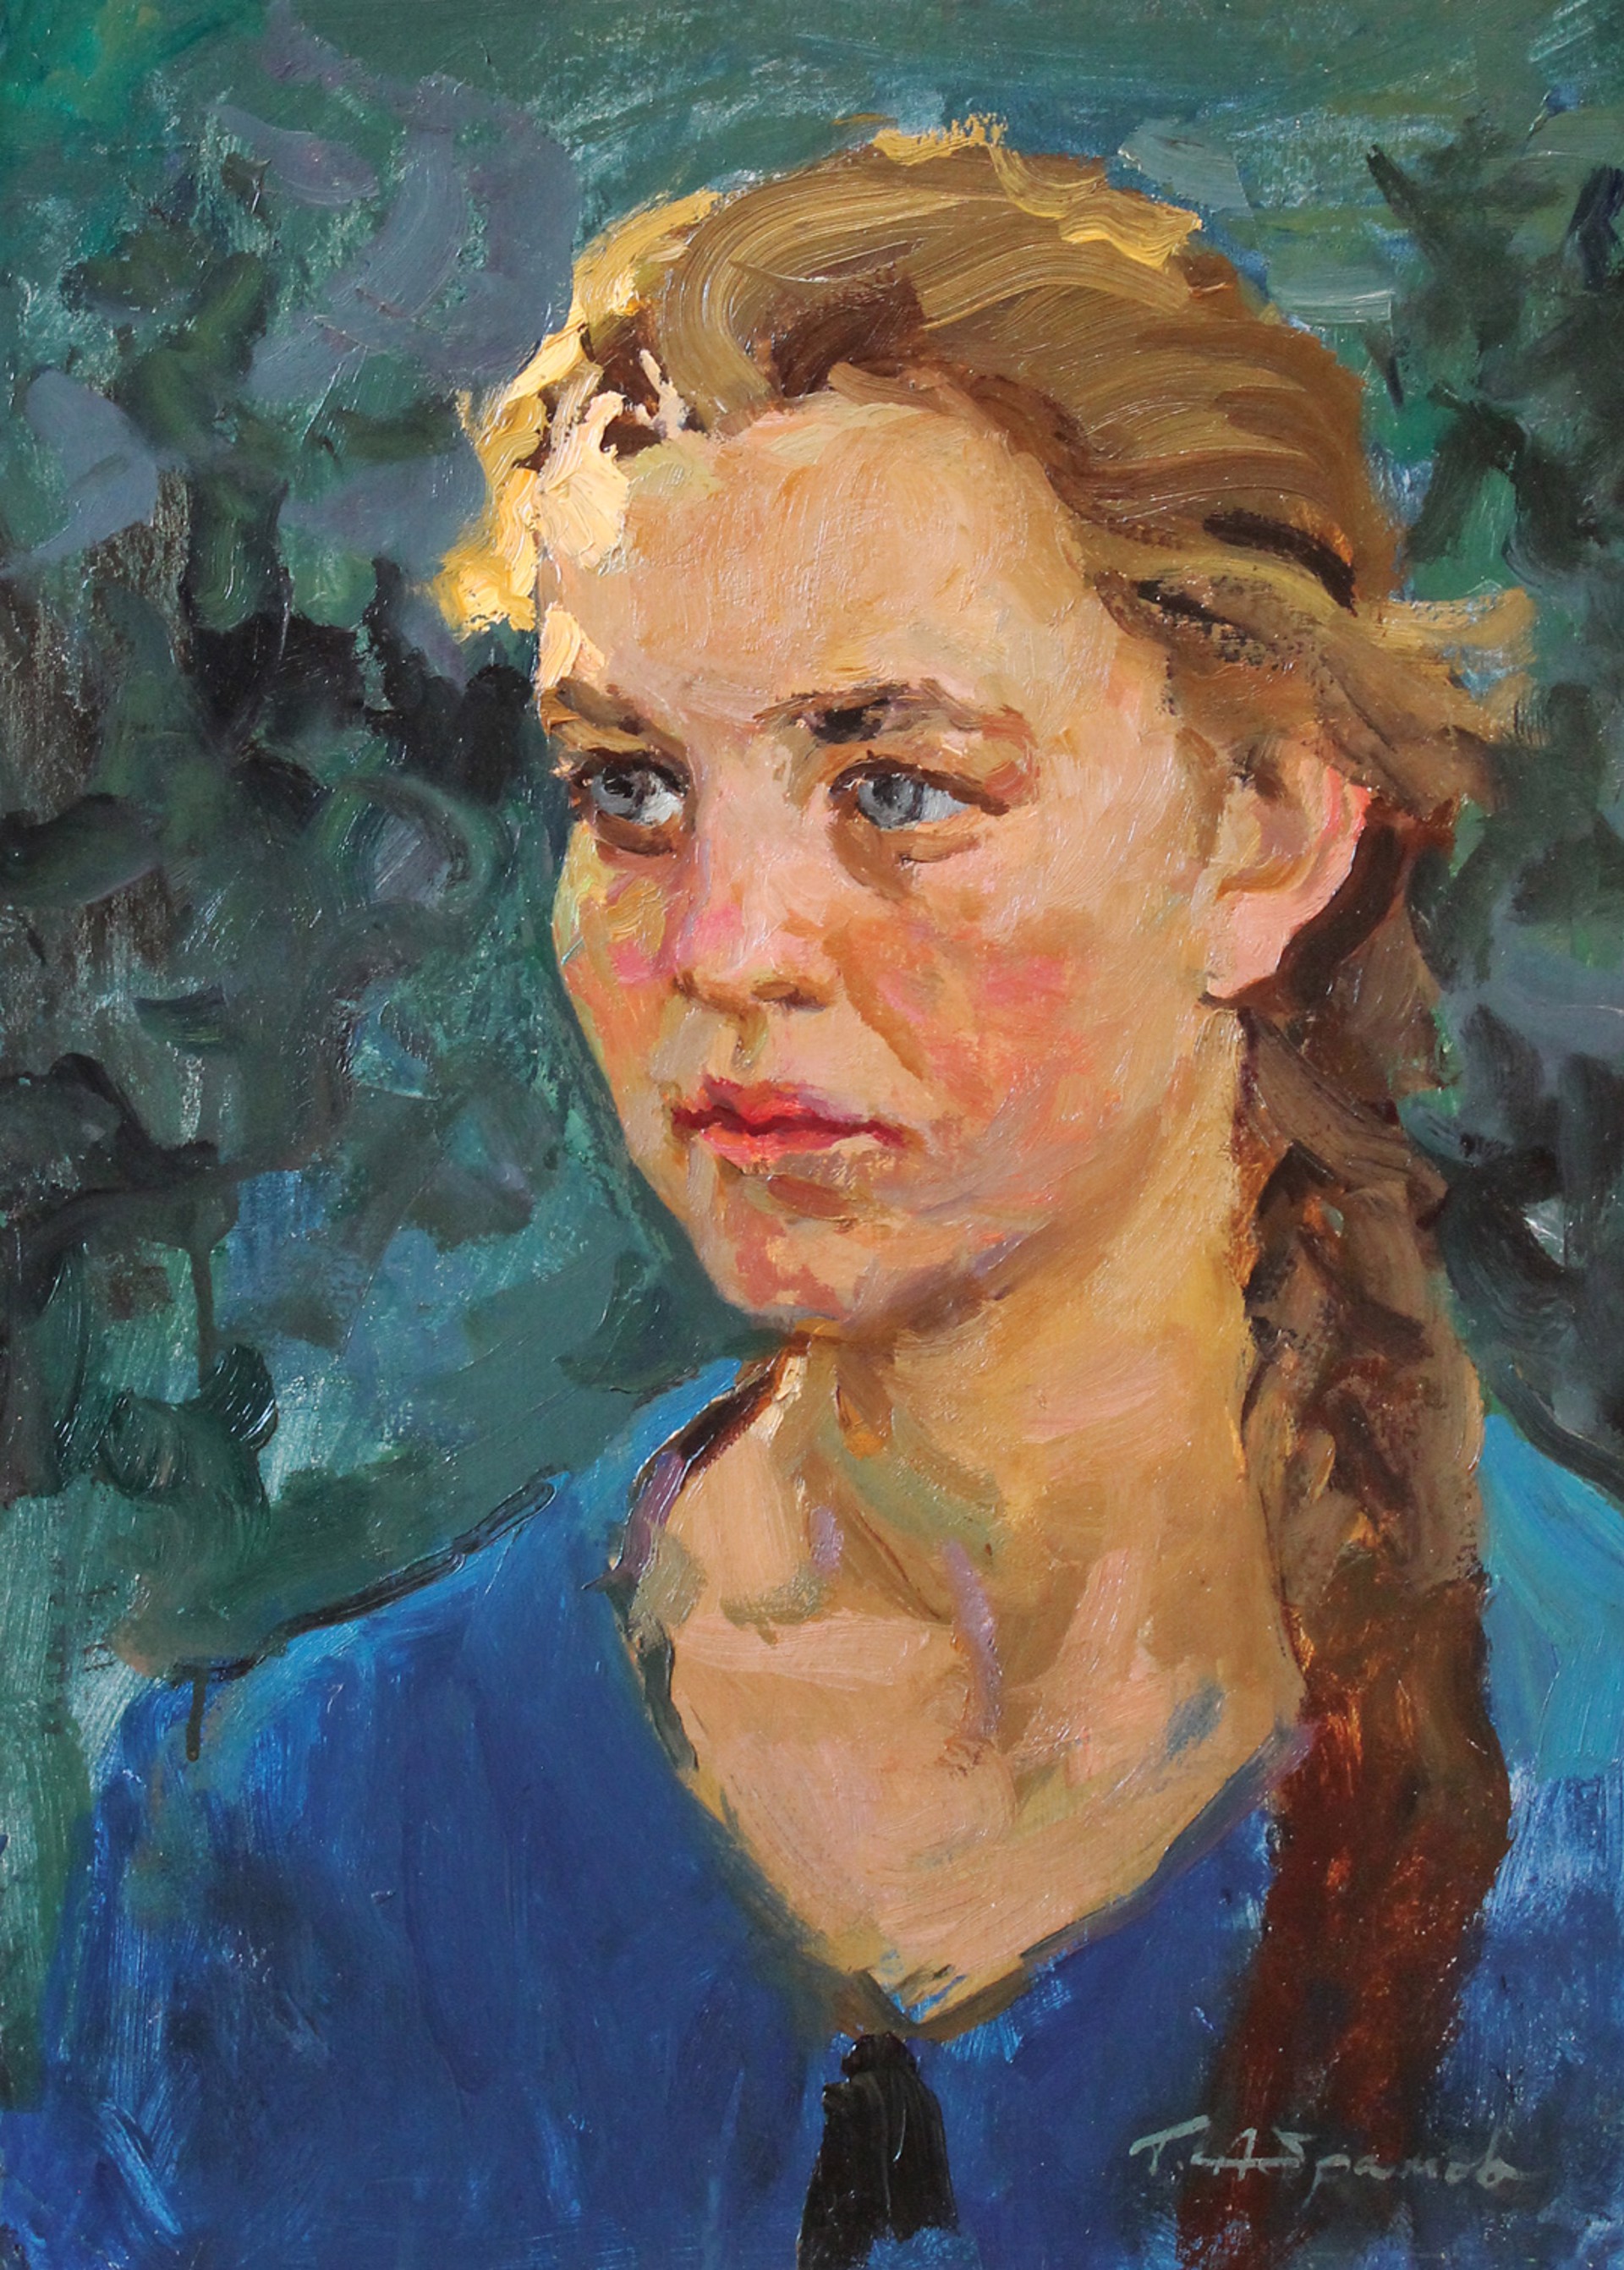 Girl with Braid in Blue by Georgi Abramov